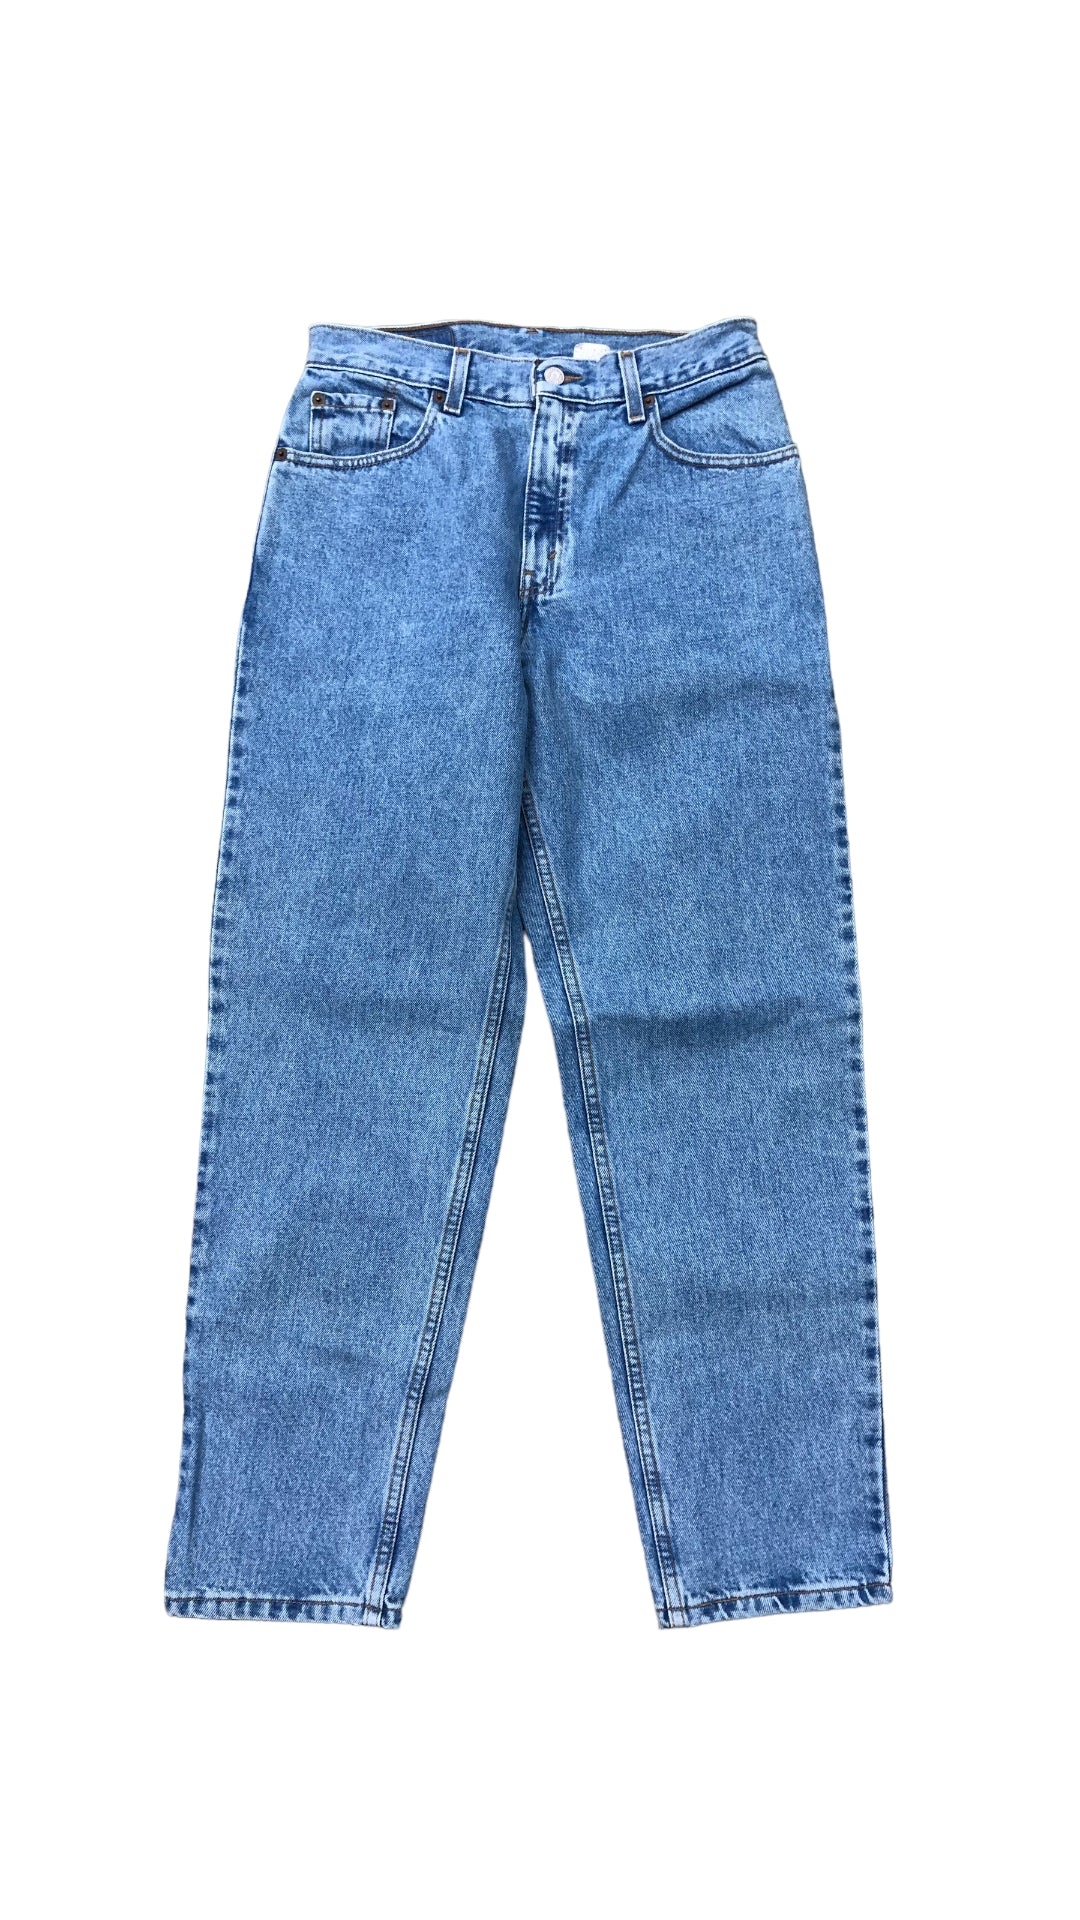 VTG Nos Levi's 550 Blue Jeans Sz 28x29